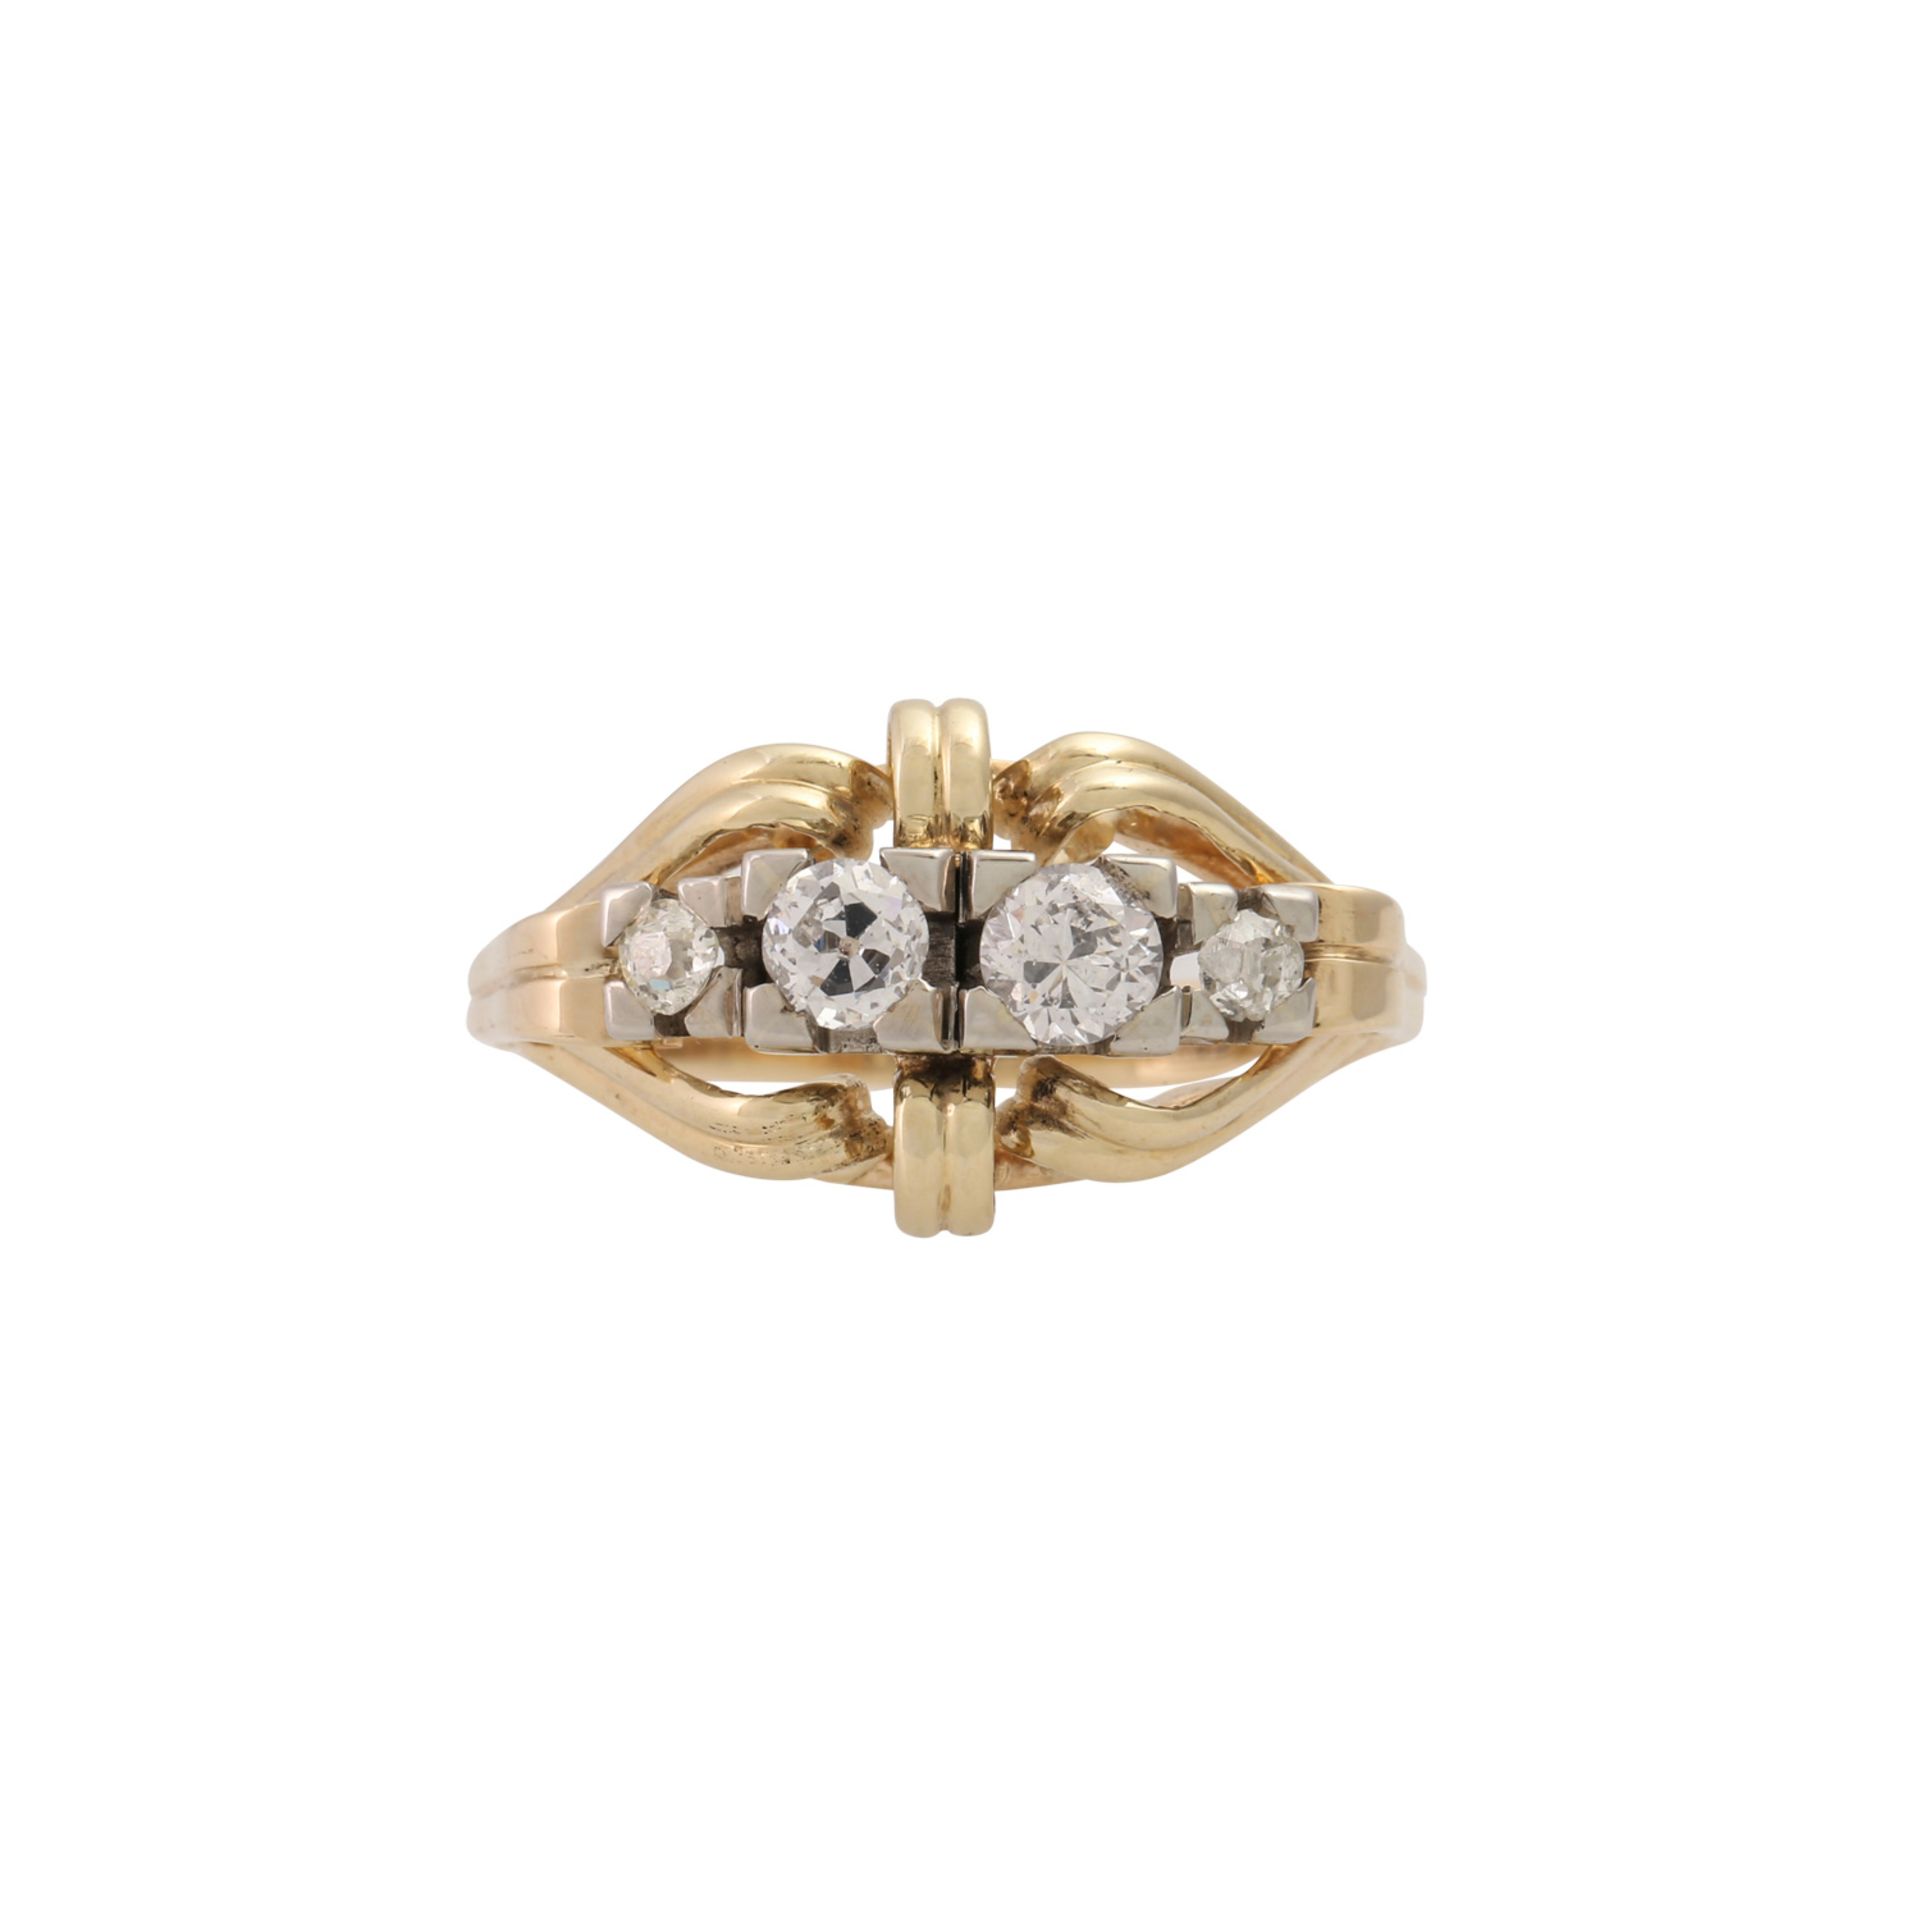 Ring mit Altschliffdiamanten von zus. ca. 0,5 ct, - Image 2 of 4